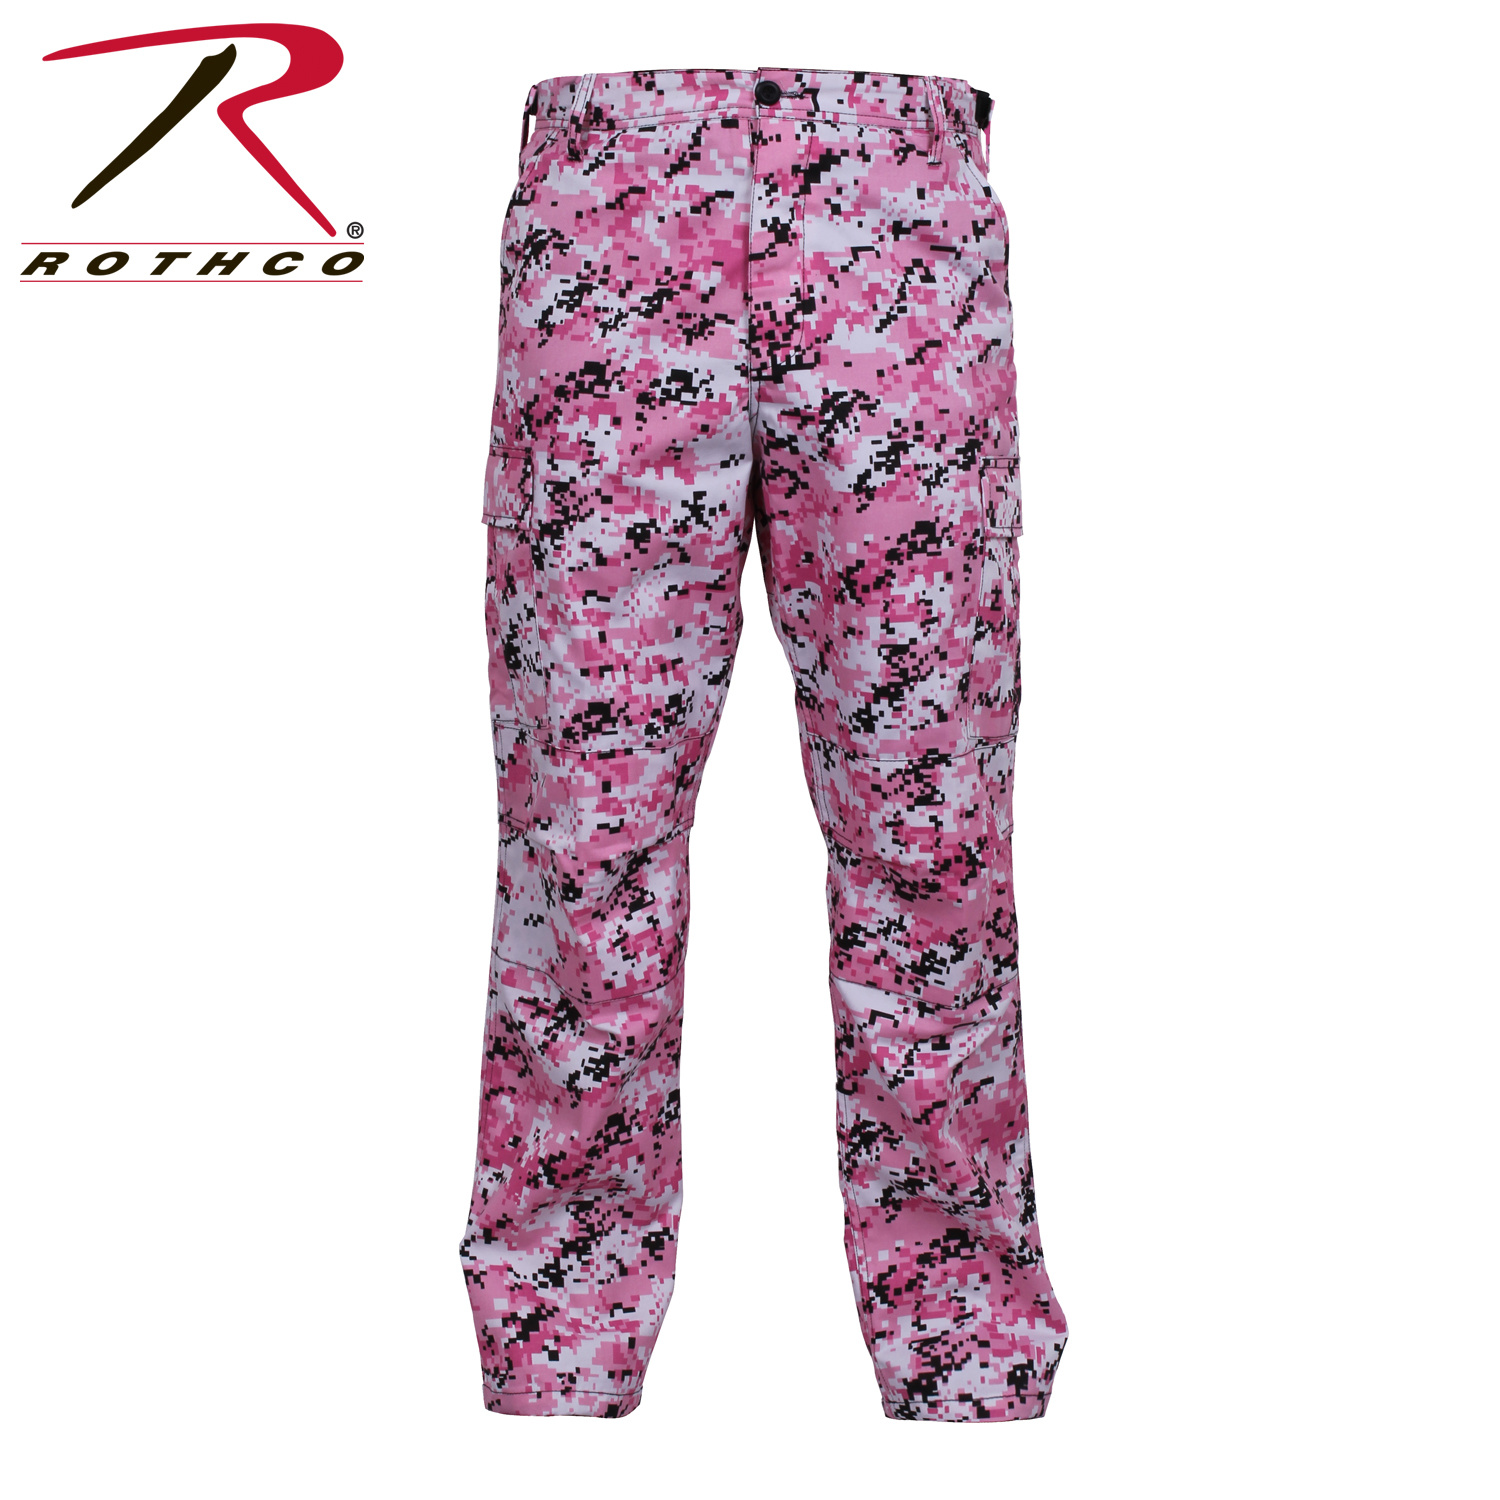 Rothco - BDU Pants - Pink Camo